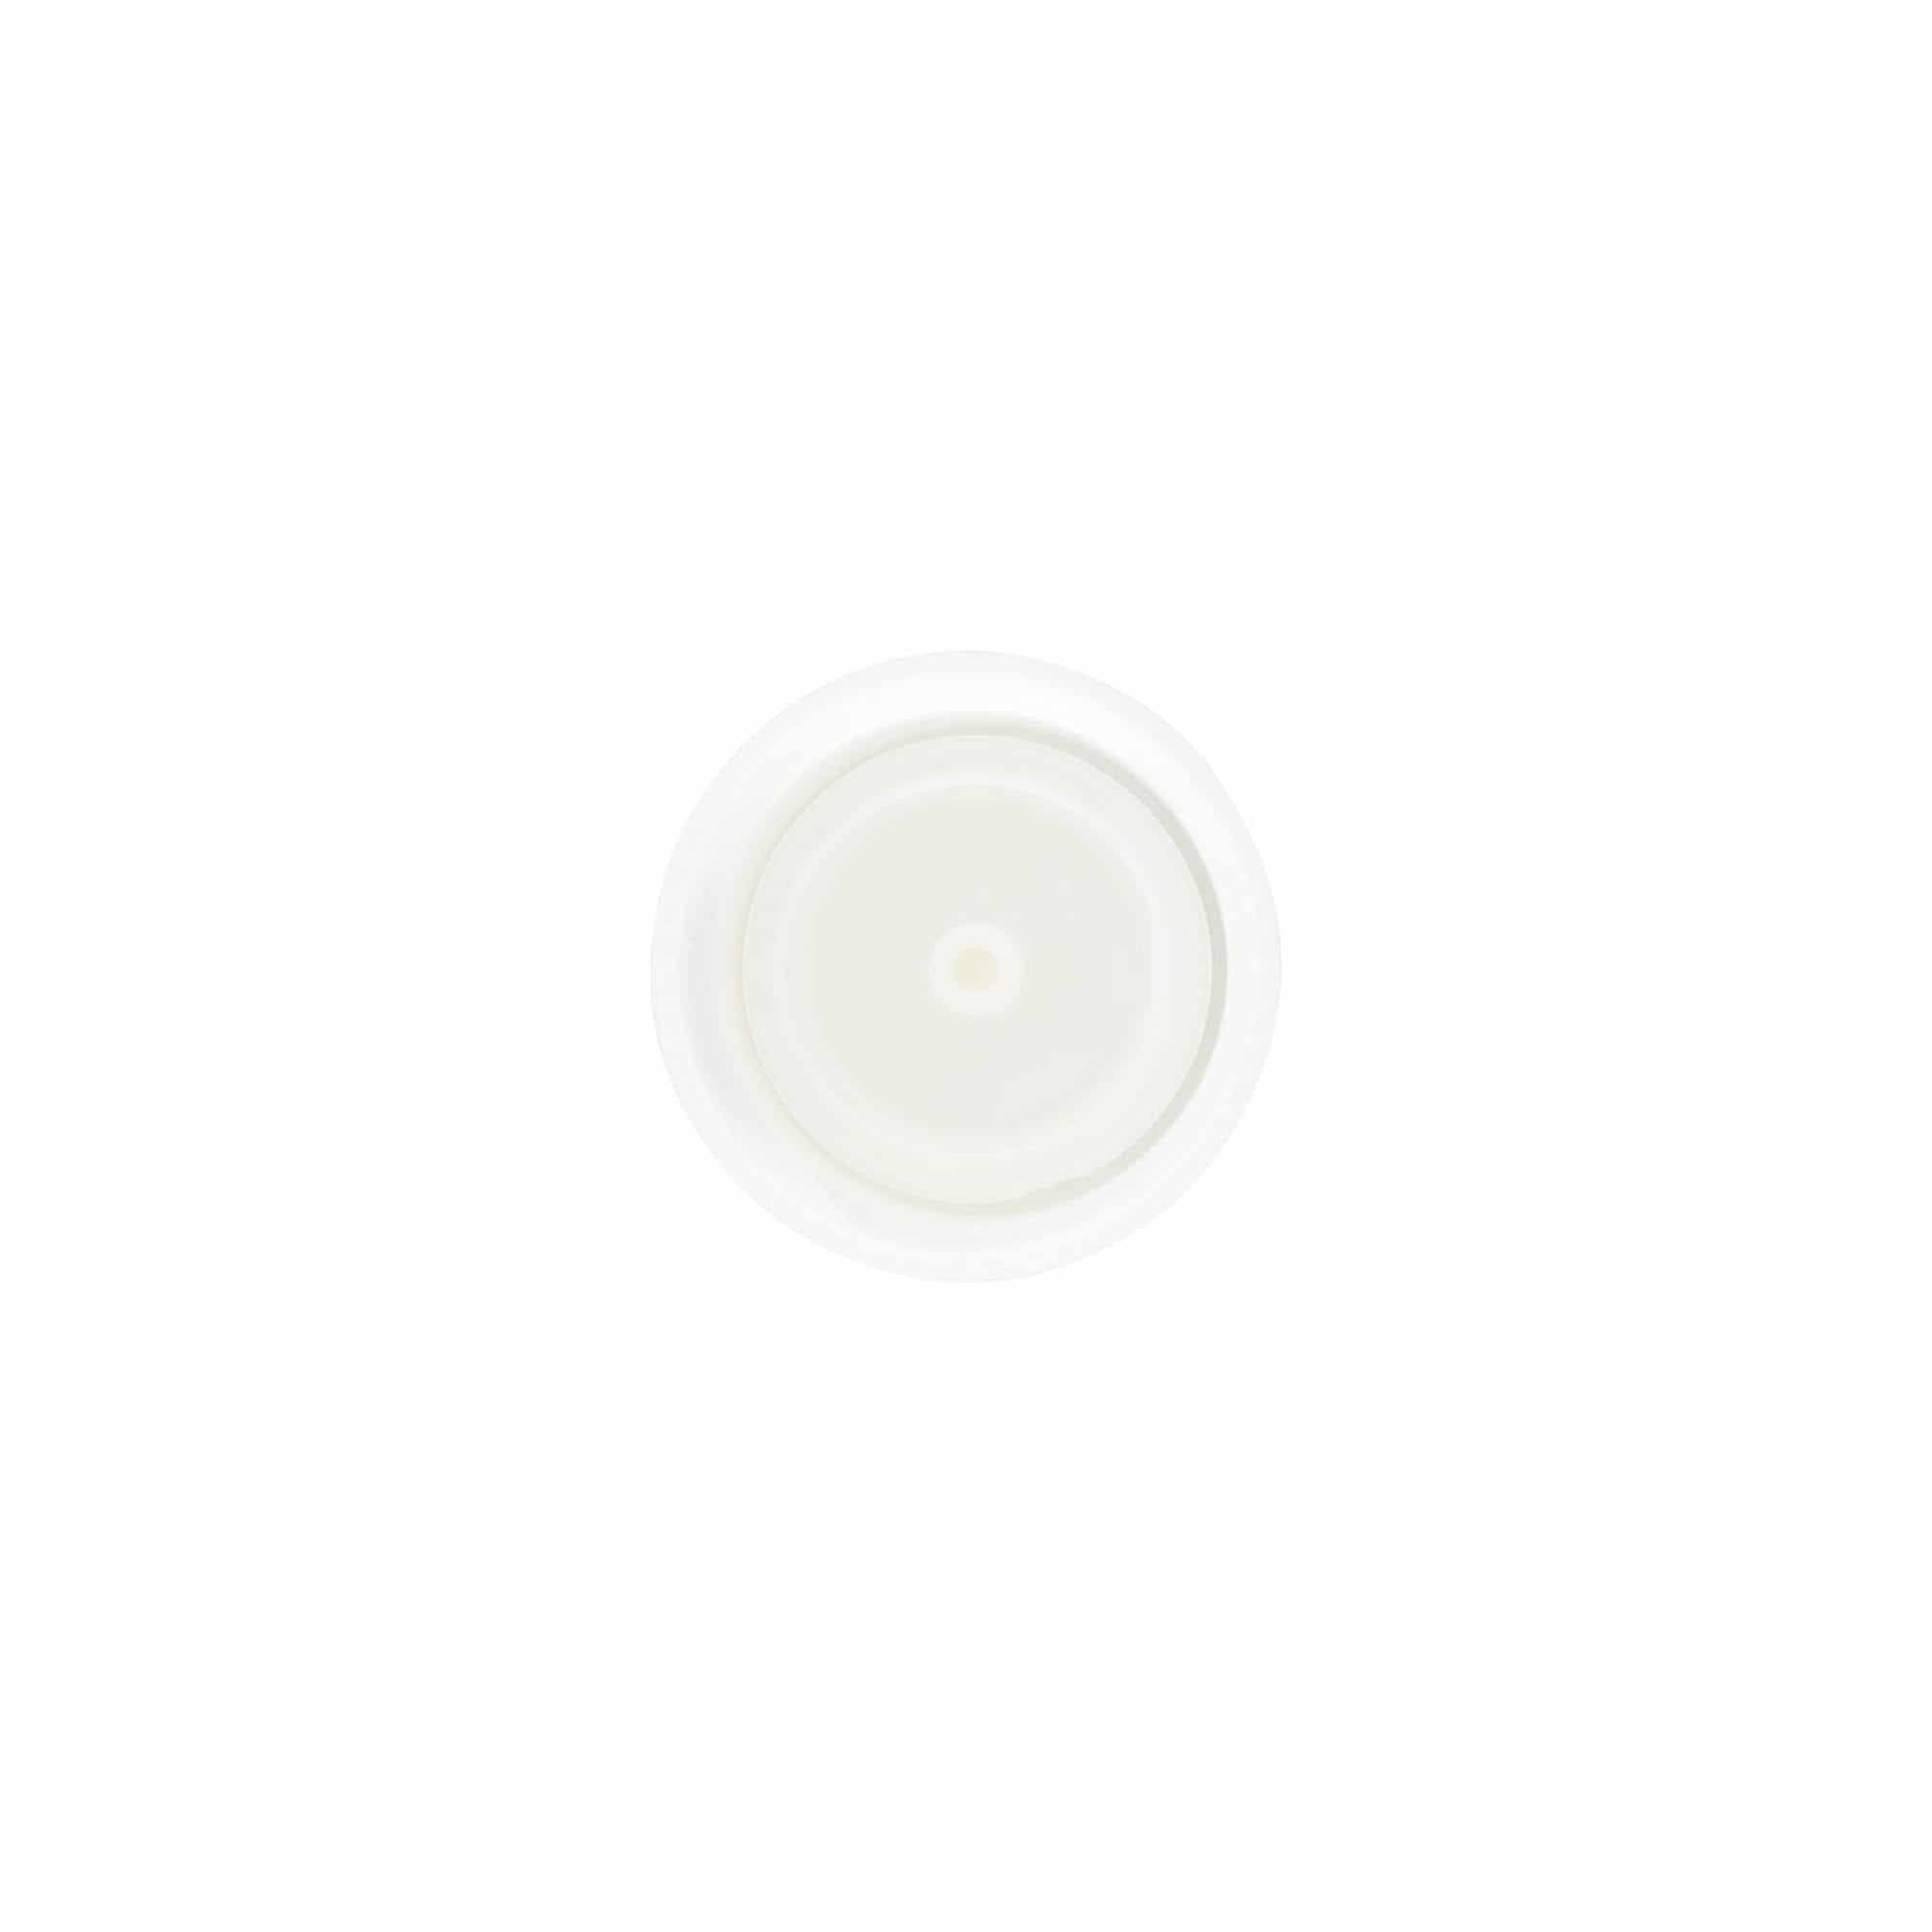 Zakrętka z wkładką natryskową, tworzywo sztuczne PP, kolor biały, do zamknięcia: GPI 24/410